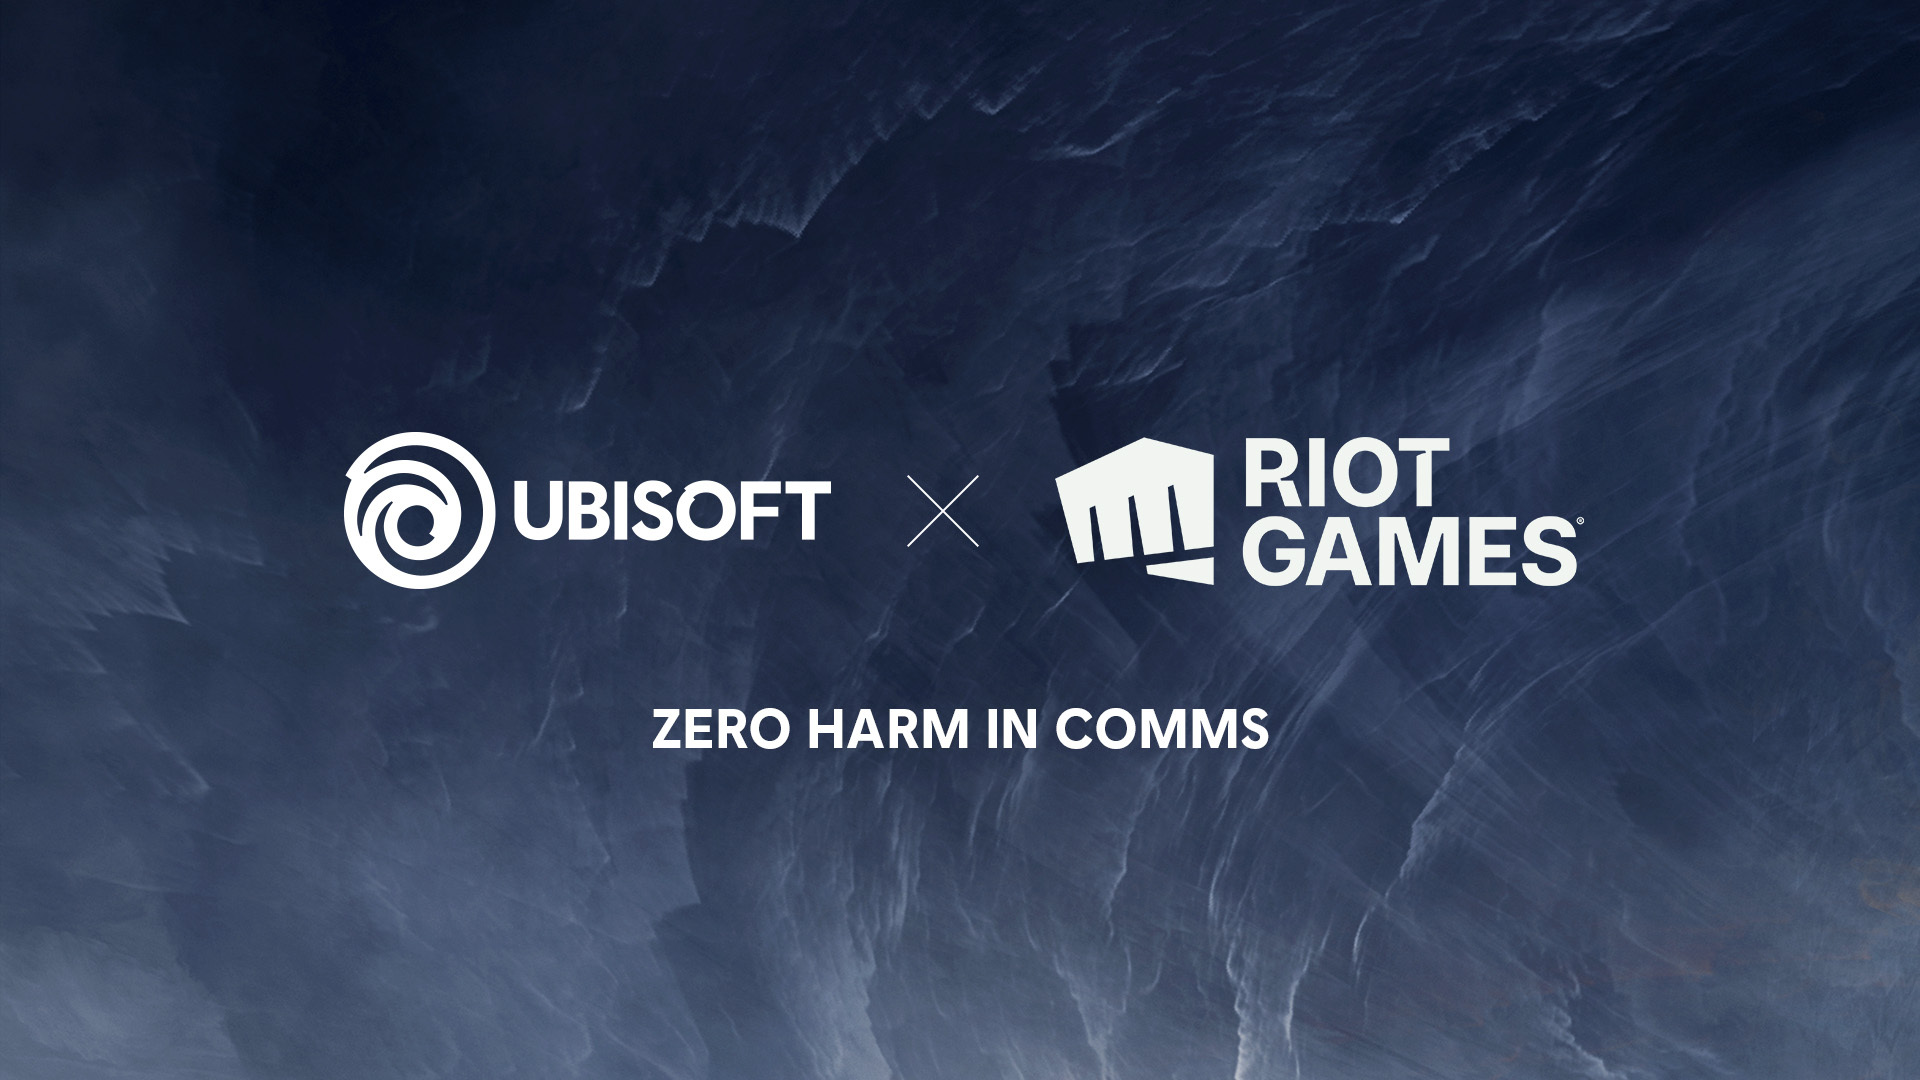 ライアットゲームズとUbisoftが、ゲームチャットにおける悪意のある内容を検知する"Zero Harm in Comms"リサーチプロジェクトを発表